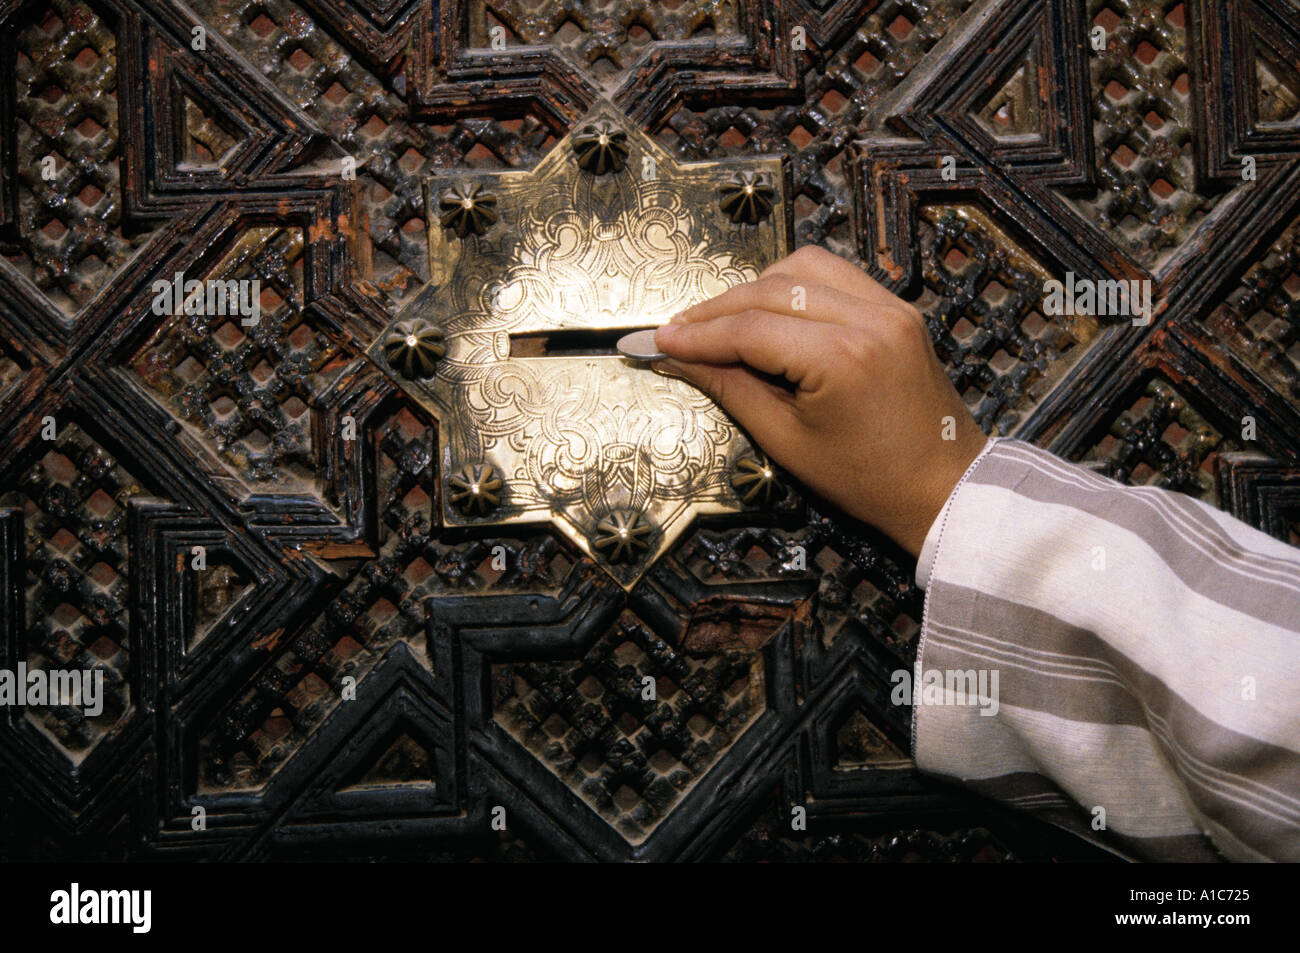 Le zakat ou le don d'almes est l'un des principaux principes de l'Islam, ici au Maroc Banque D'Images